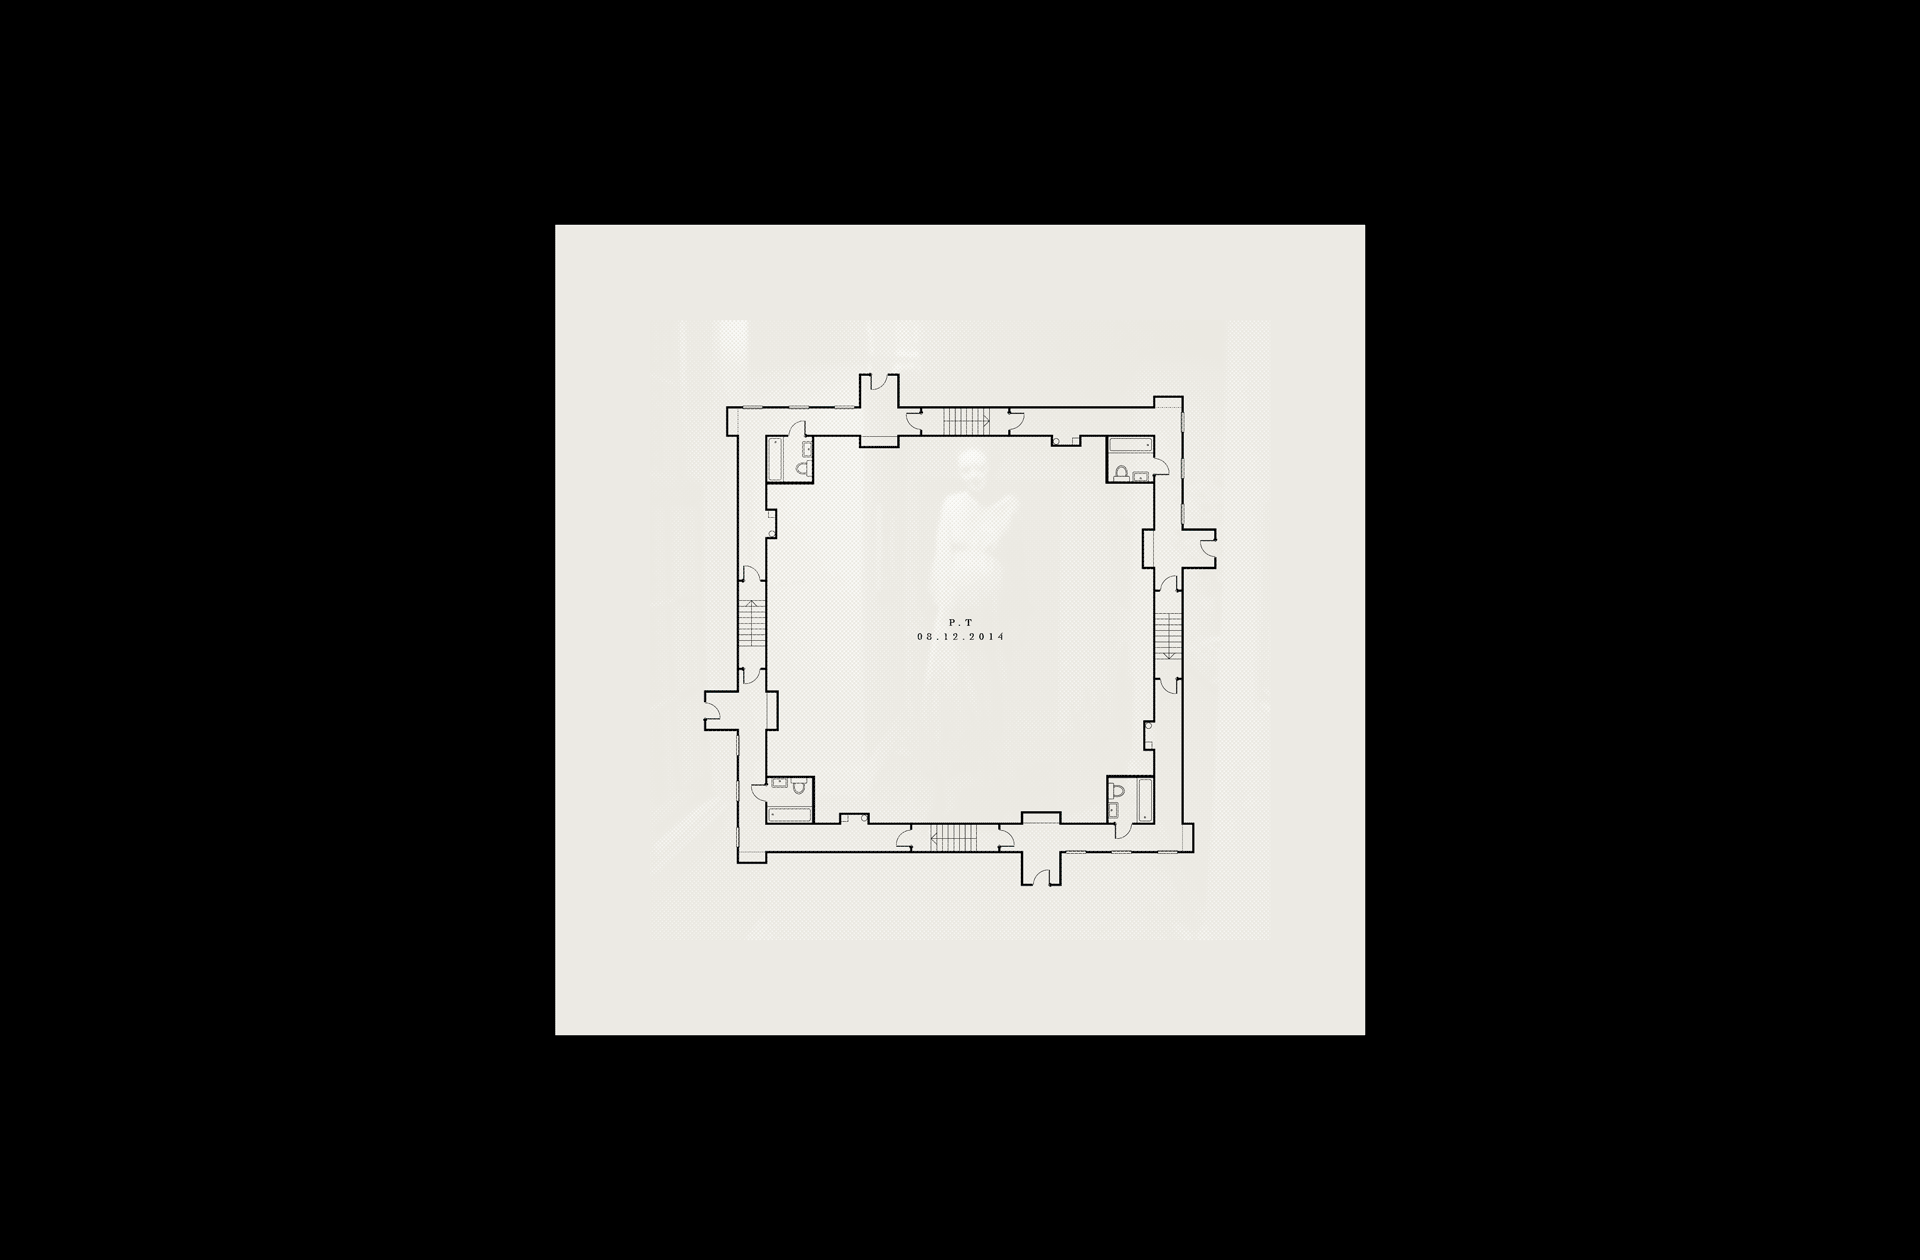 P.T — Blueprint [Concept]